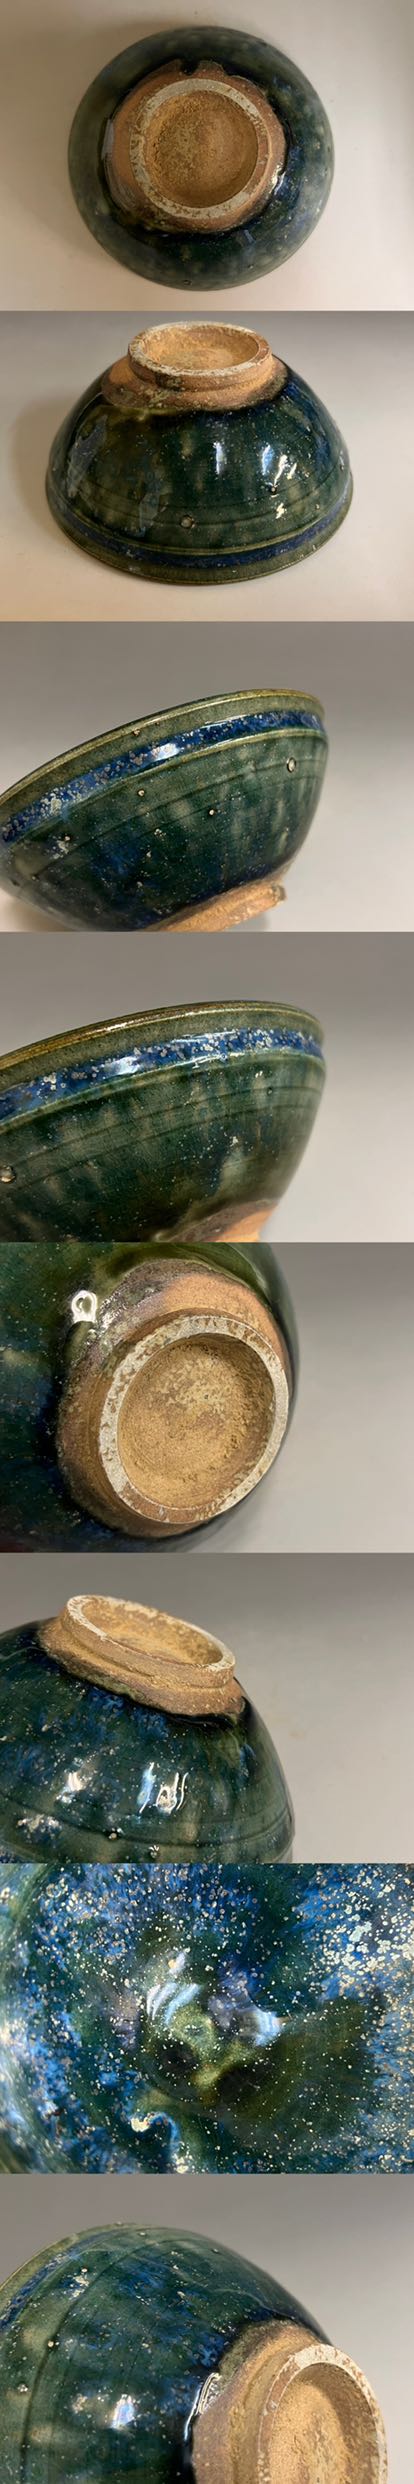 販促通販宋 天目茶碗 吉州窯 孔雀釉 茶碗 古美術 古玩 口径12.5cm 高さ5cm 宋